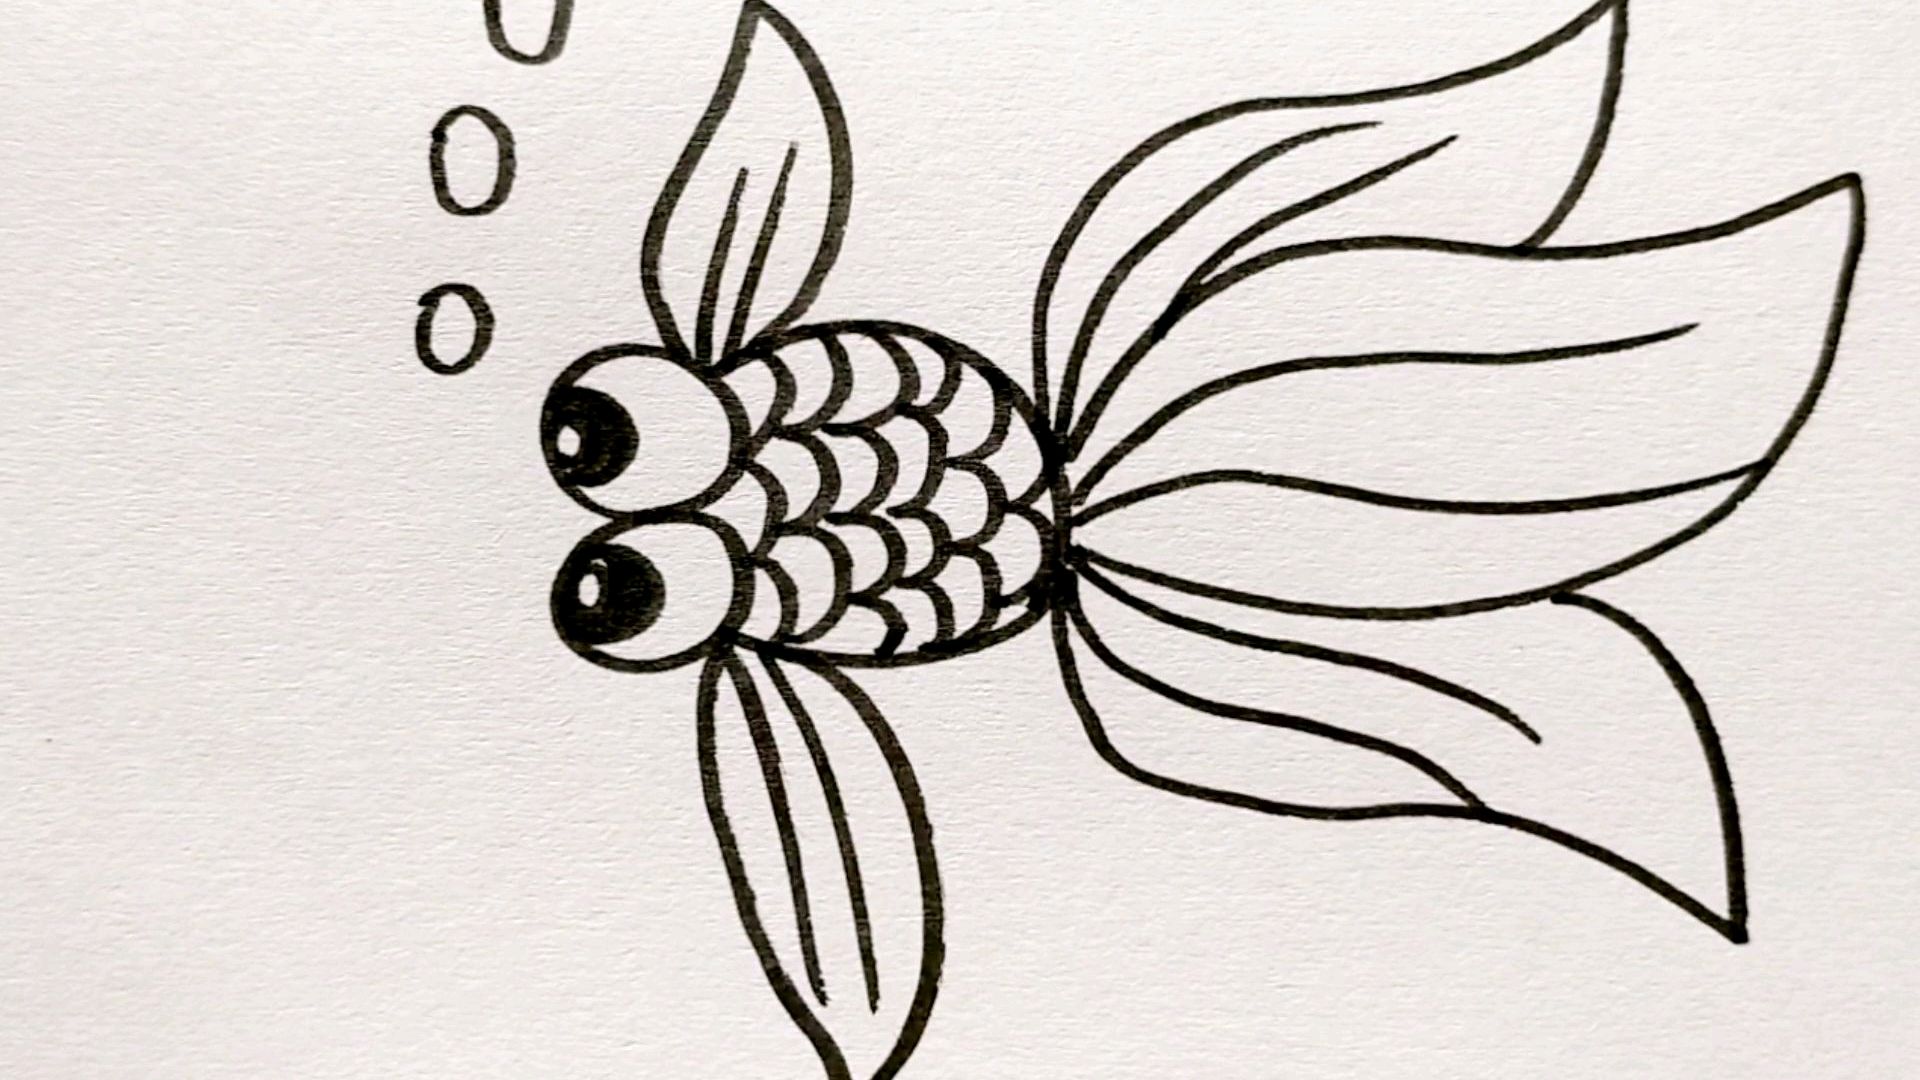 1小金鱼:超简单的画法,零基础也能学会哦,和宝宝一起画吧!